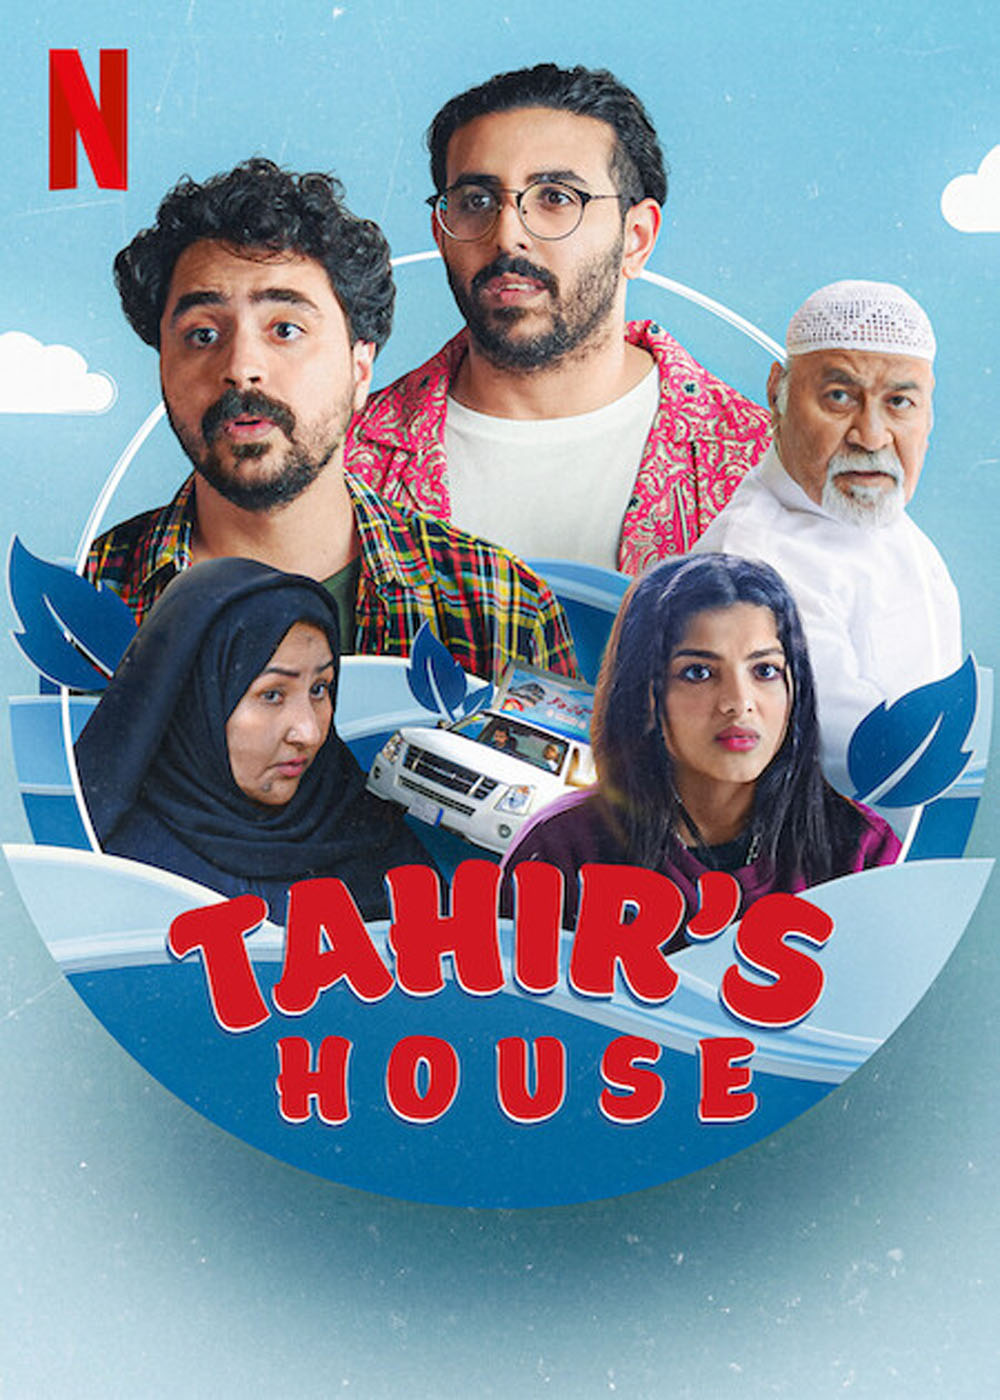 Tahir’s house